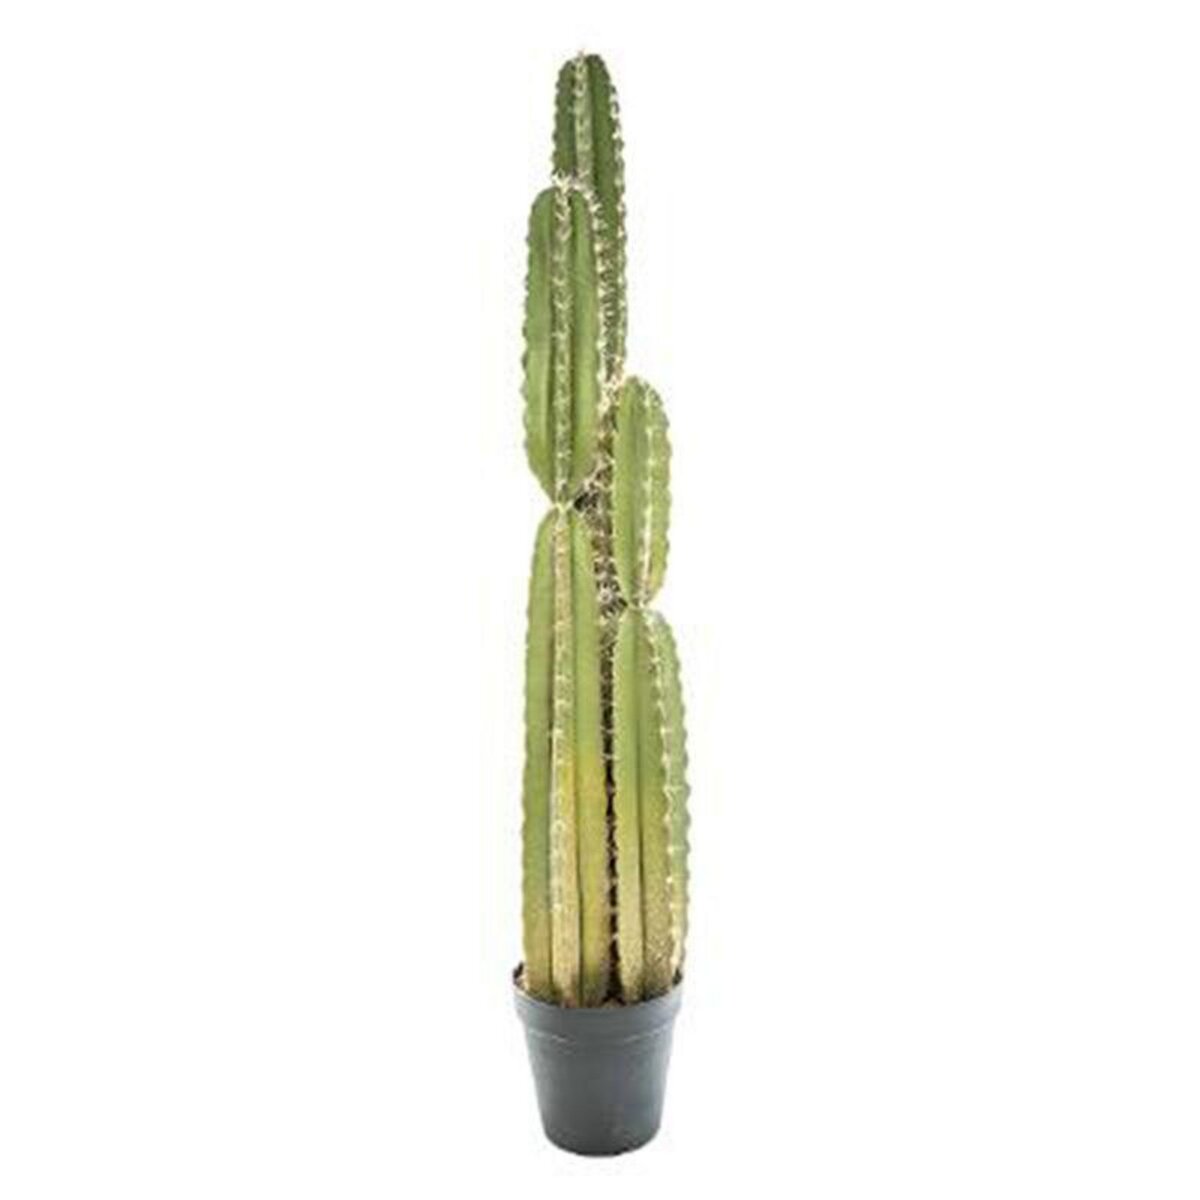  Plante Artificielle  Cactus  185cm Vert